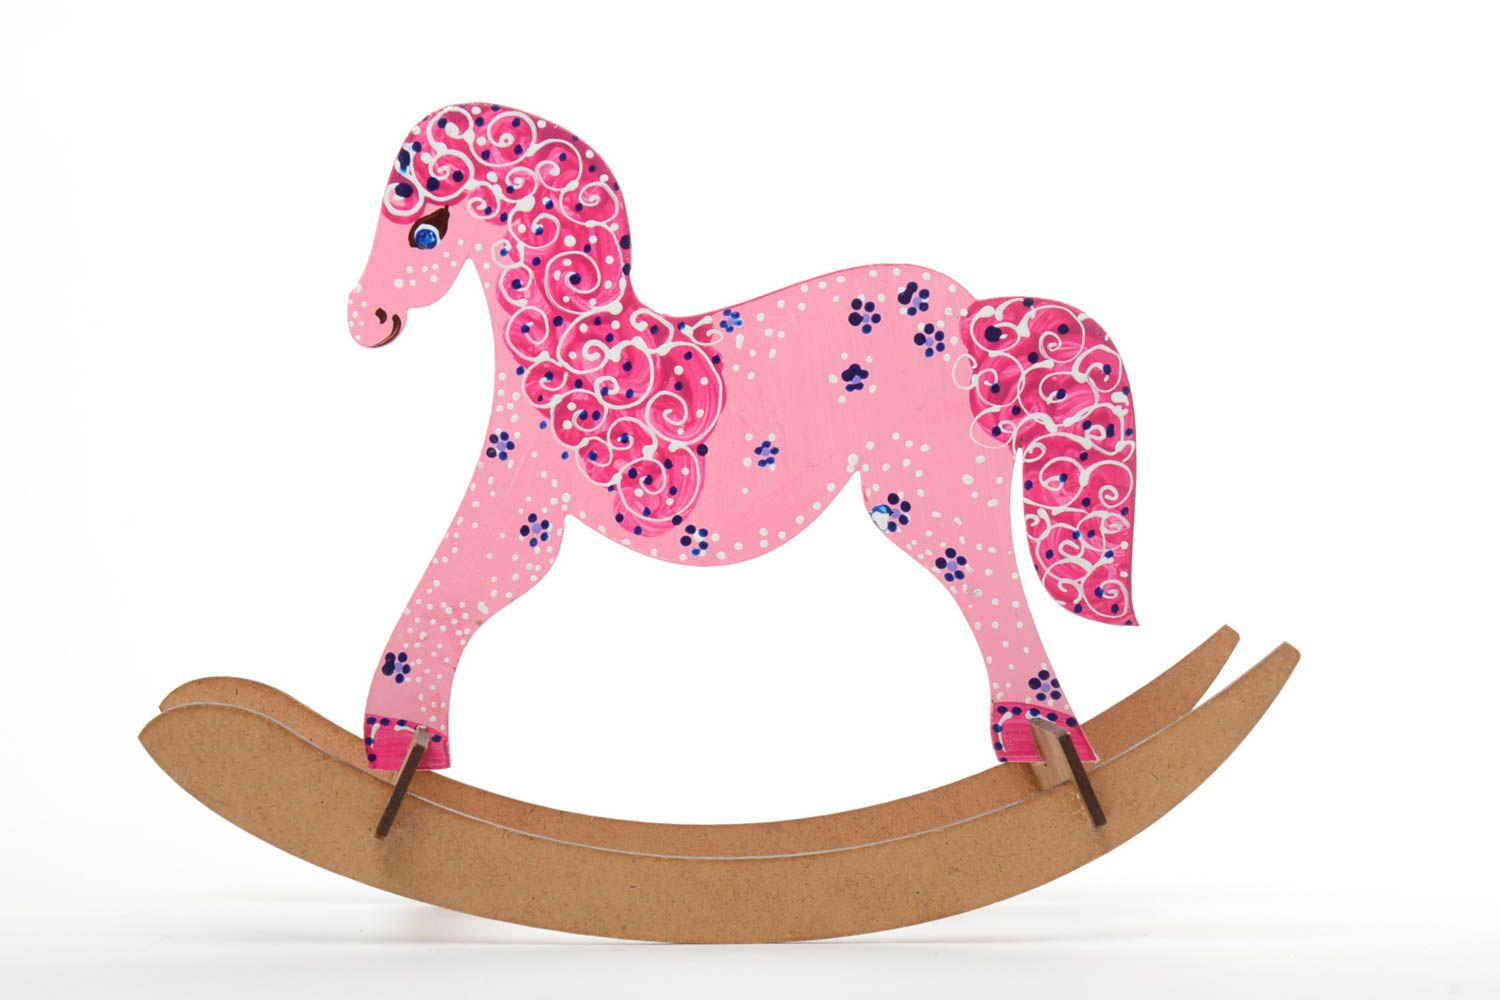 Игрушка лошадка ручной работы розового цвета качалка маленького размера детская фото 2